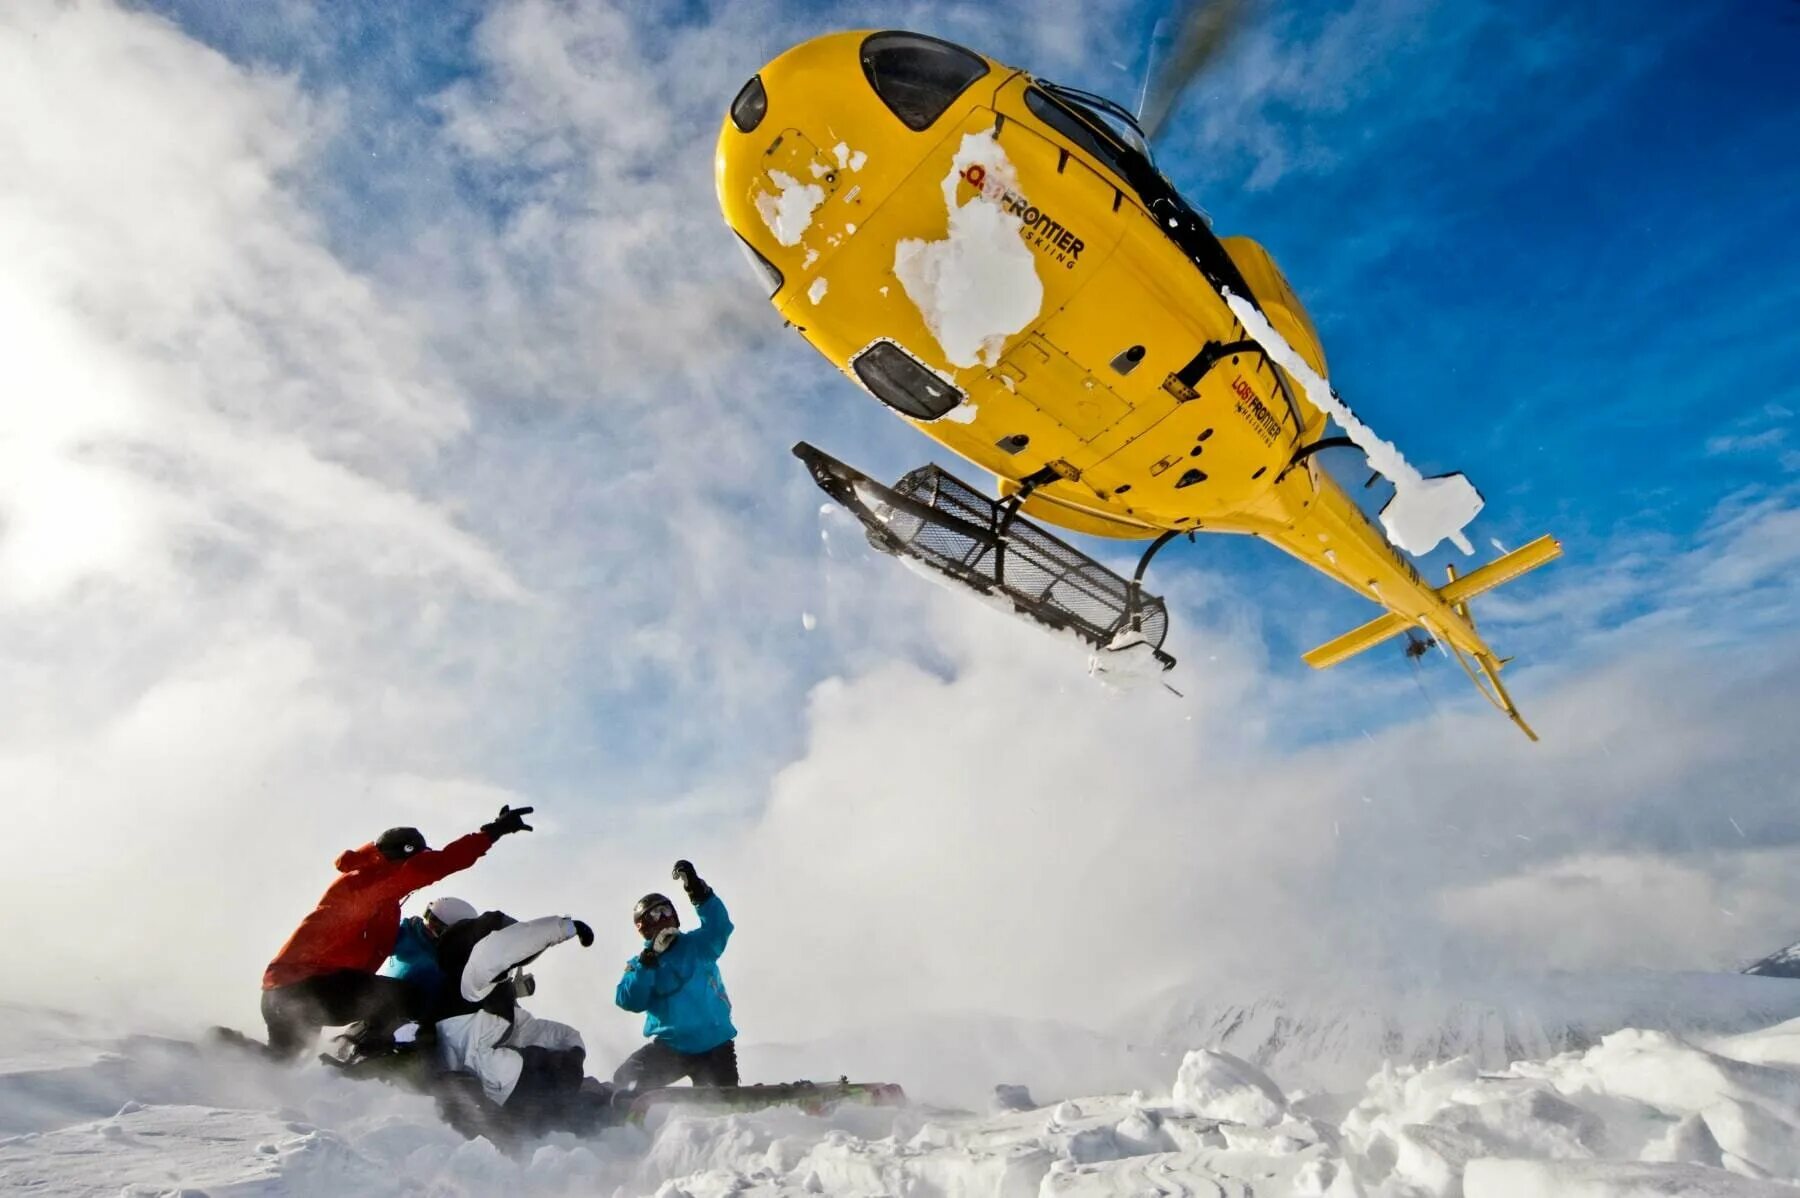 Хелискиинг. Heli Ski Камчатка. Хели ски вертолетах. Хелискиинг вид спорта.